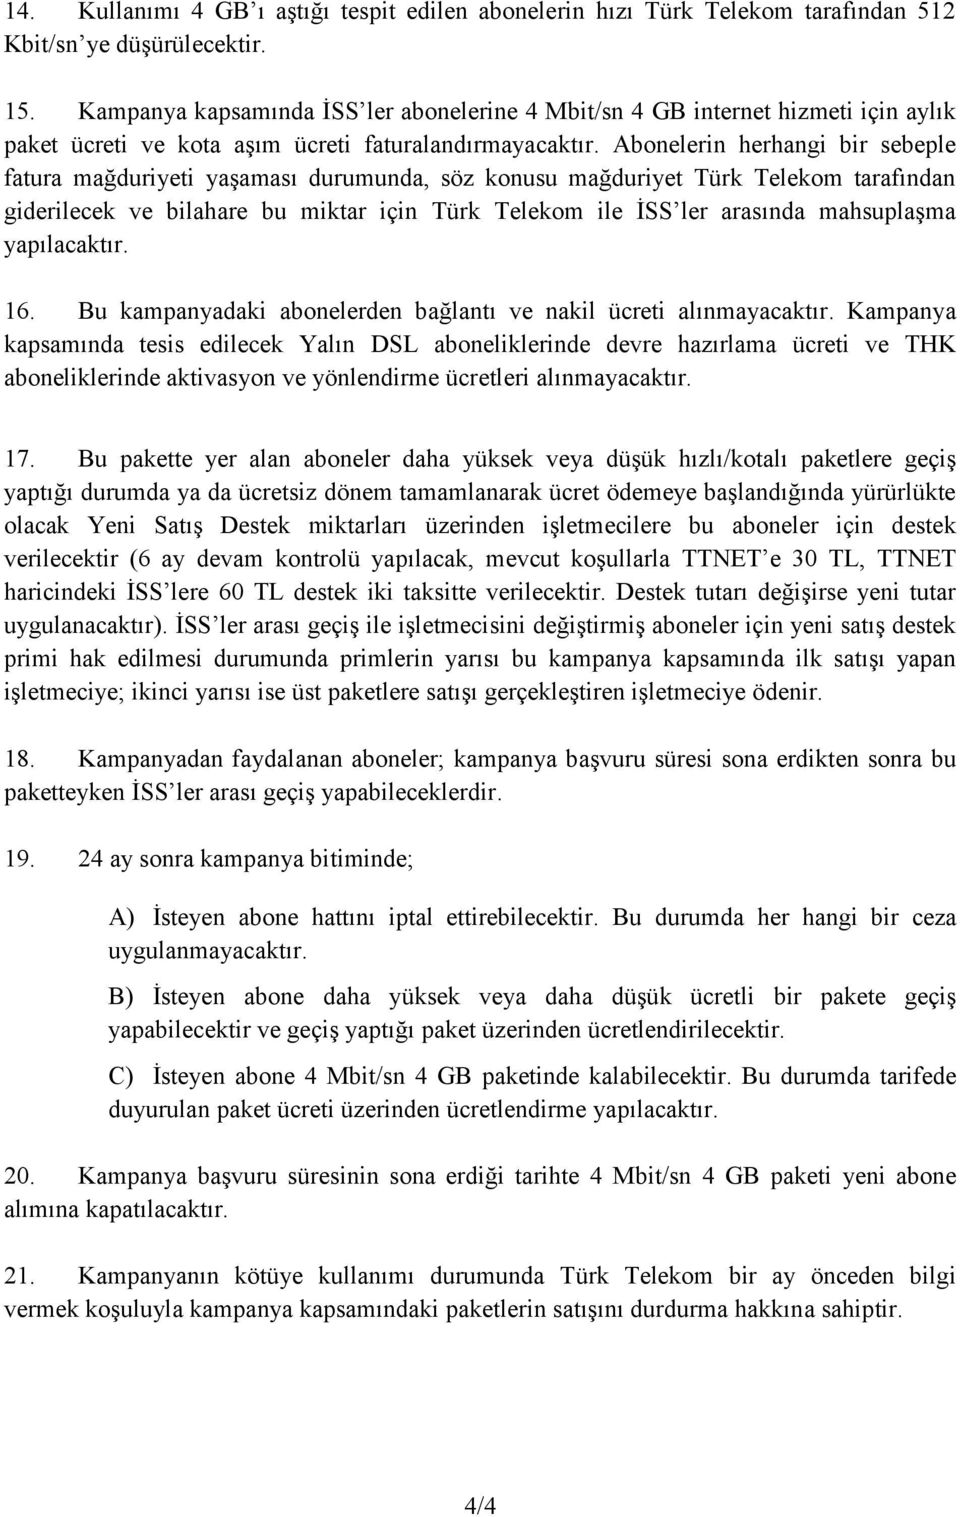 Abonelerin herhangi bir sebeple fatura mağduriyeti yaşaması durumunda, söz konusu mağduriyet Türk Telekom tarafından giderilecek ve bilahare bu miktar için Türk Telekom ile İSS ler arasında